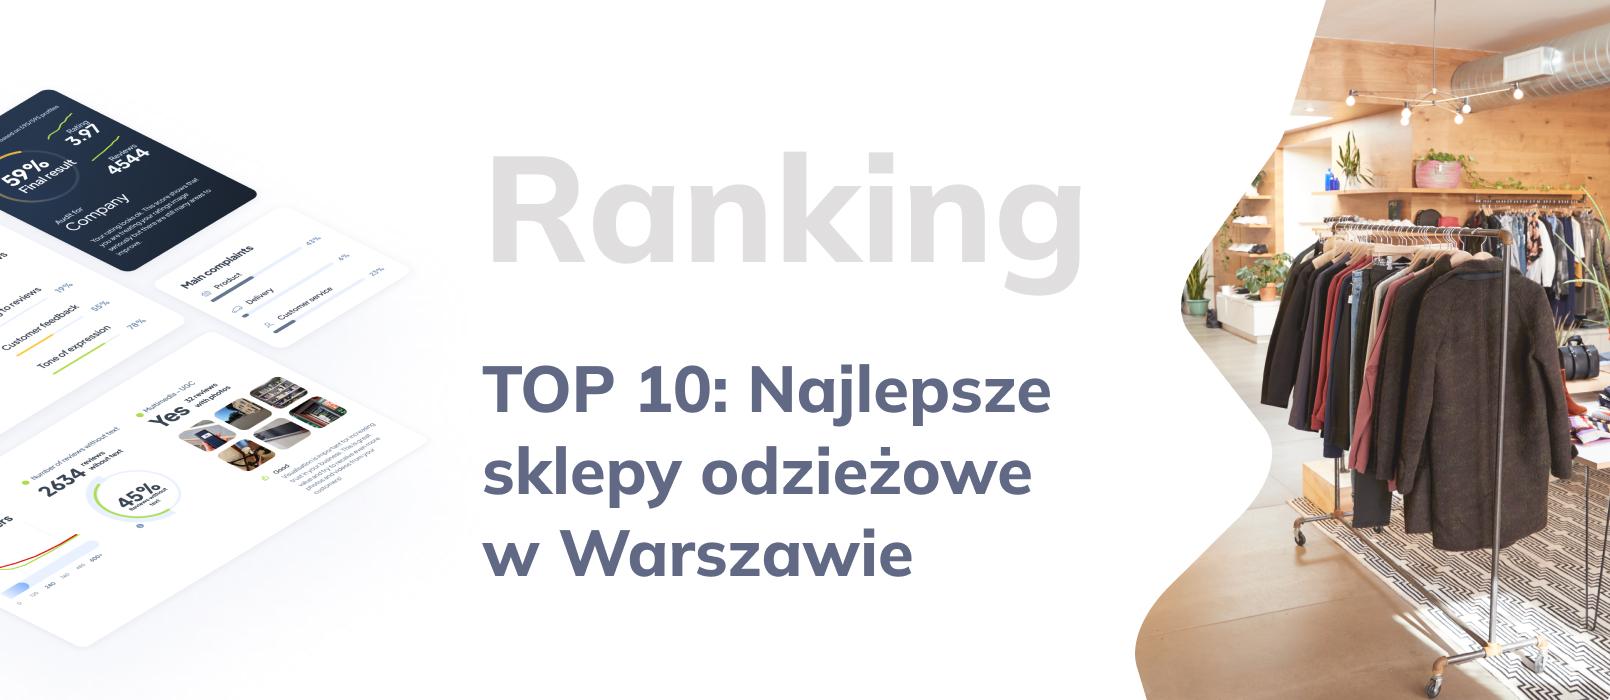 TOP 10: Ranking najlepszych sklepów odzieżowych w Warszawie, czyli najlepiej oceniane sklepy z ubraniami w Warszawie